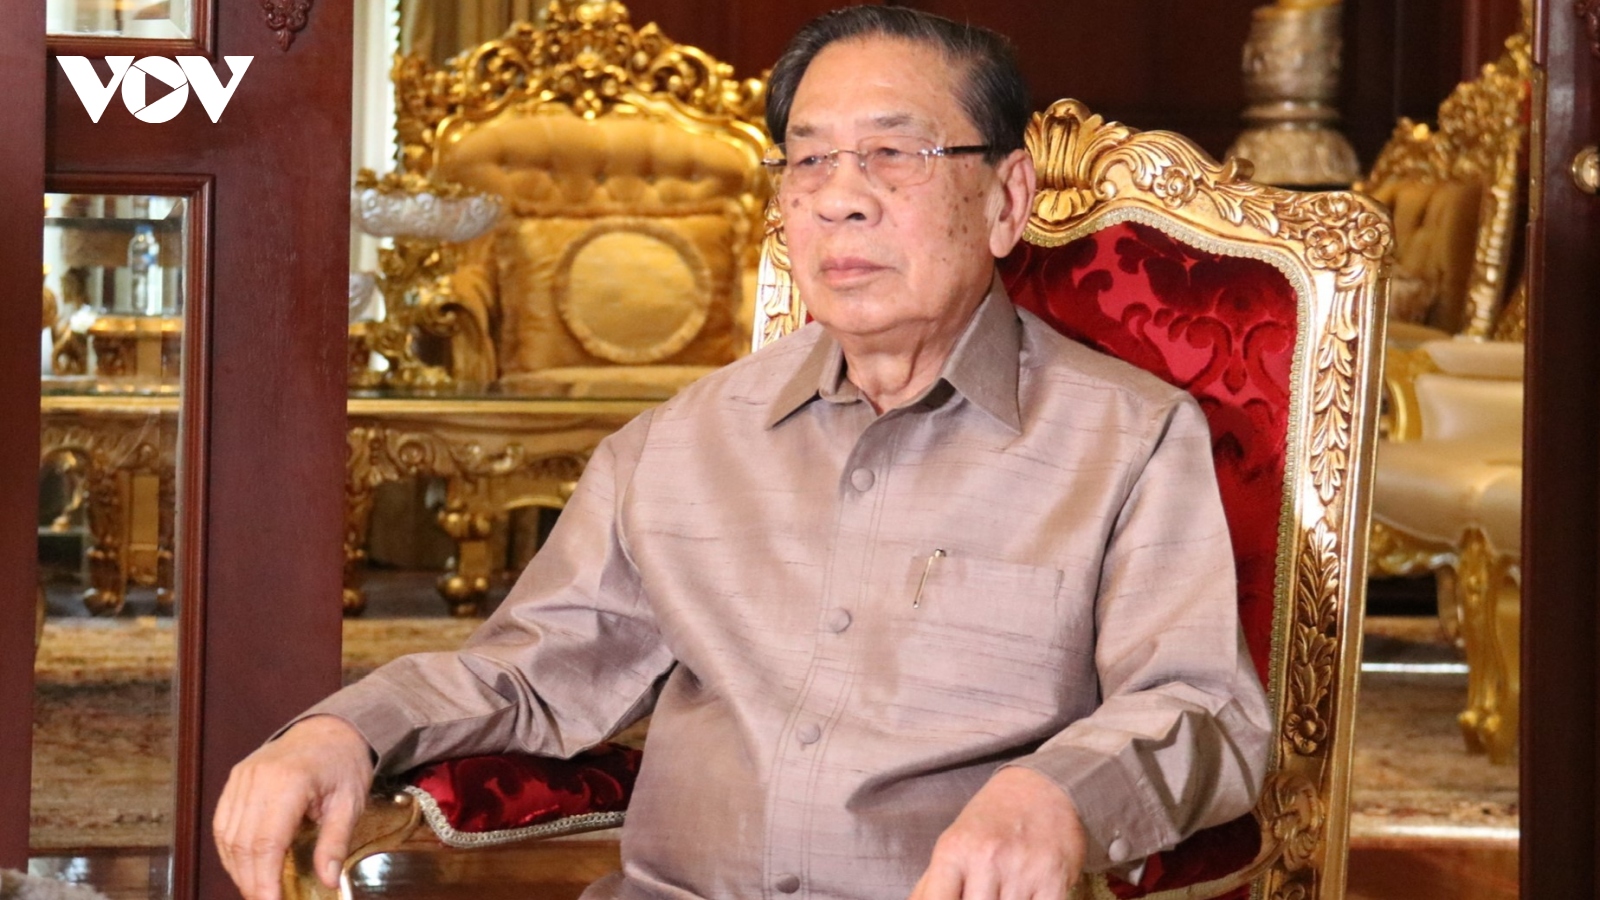 Kinh nghiệm của Tổng Bí thư Nguyễn Phú Trọng là bài học vô giá đối với Đảng, Nhà nước Lào